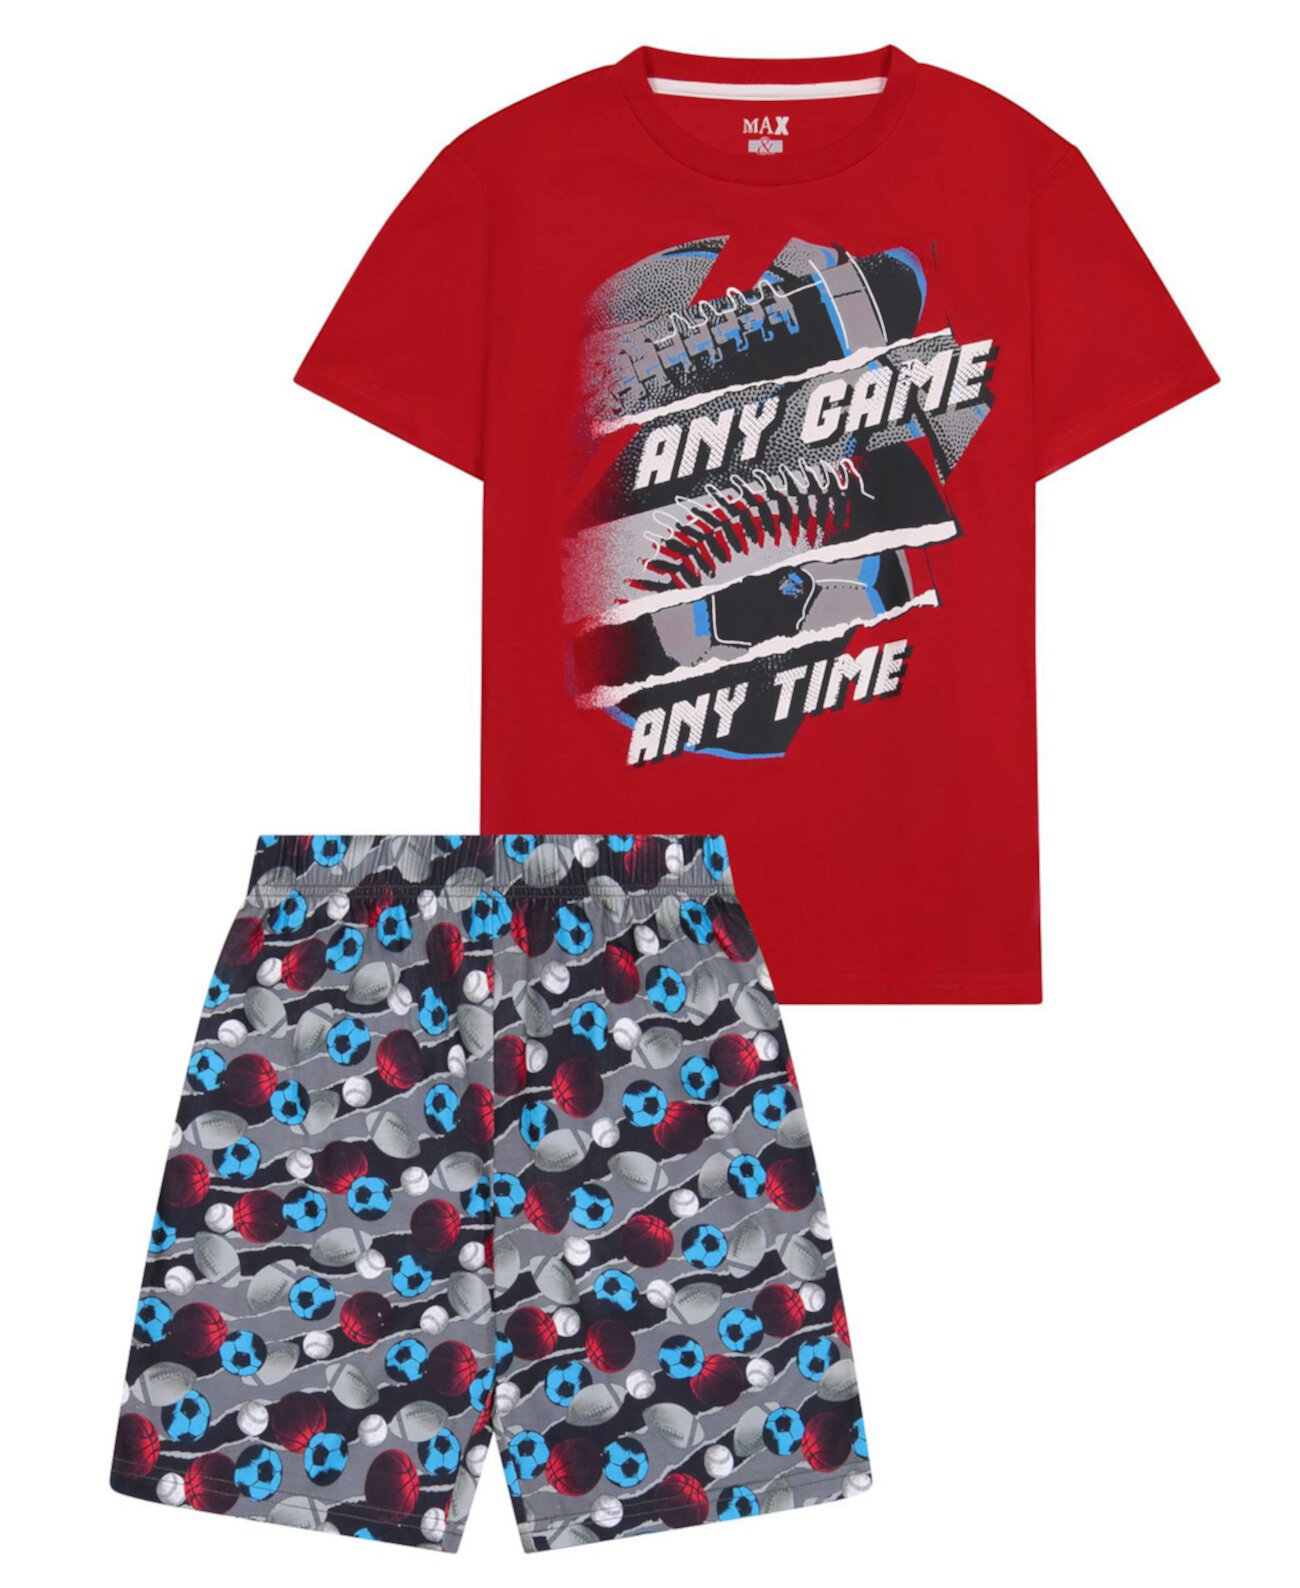 Короткий пижамный комплект из 2 предметов в спортивной теме для больших мальчиков Max & Olivia